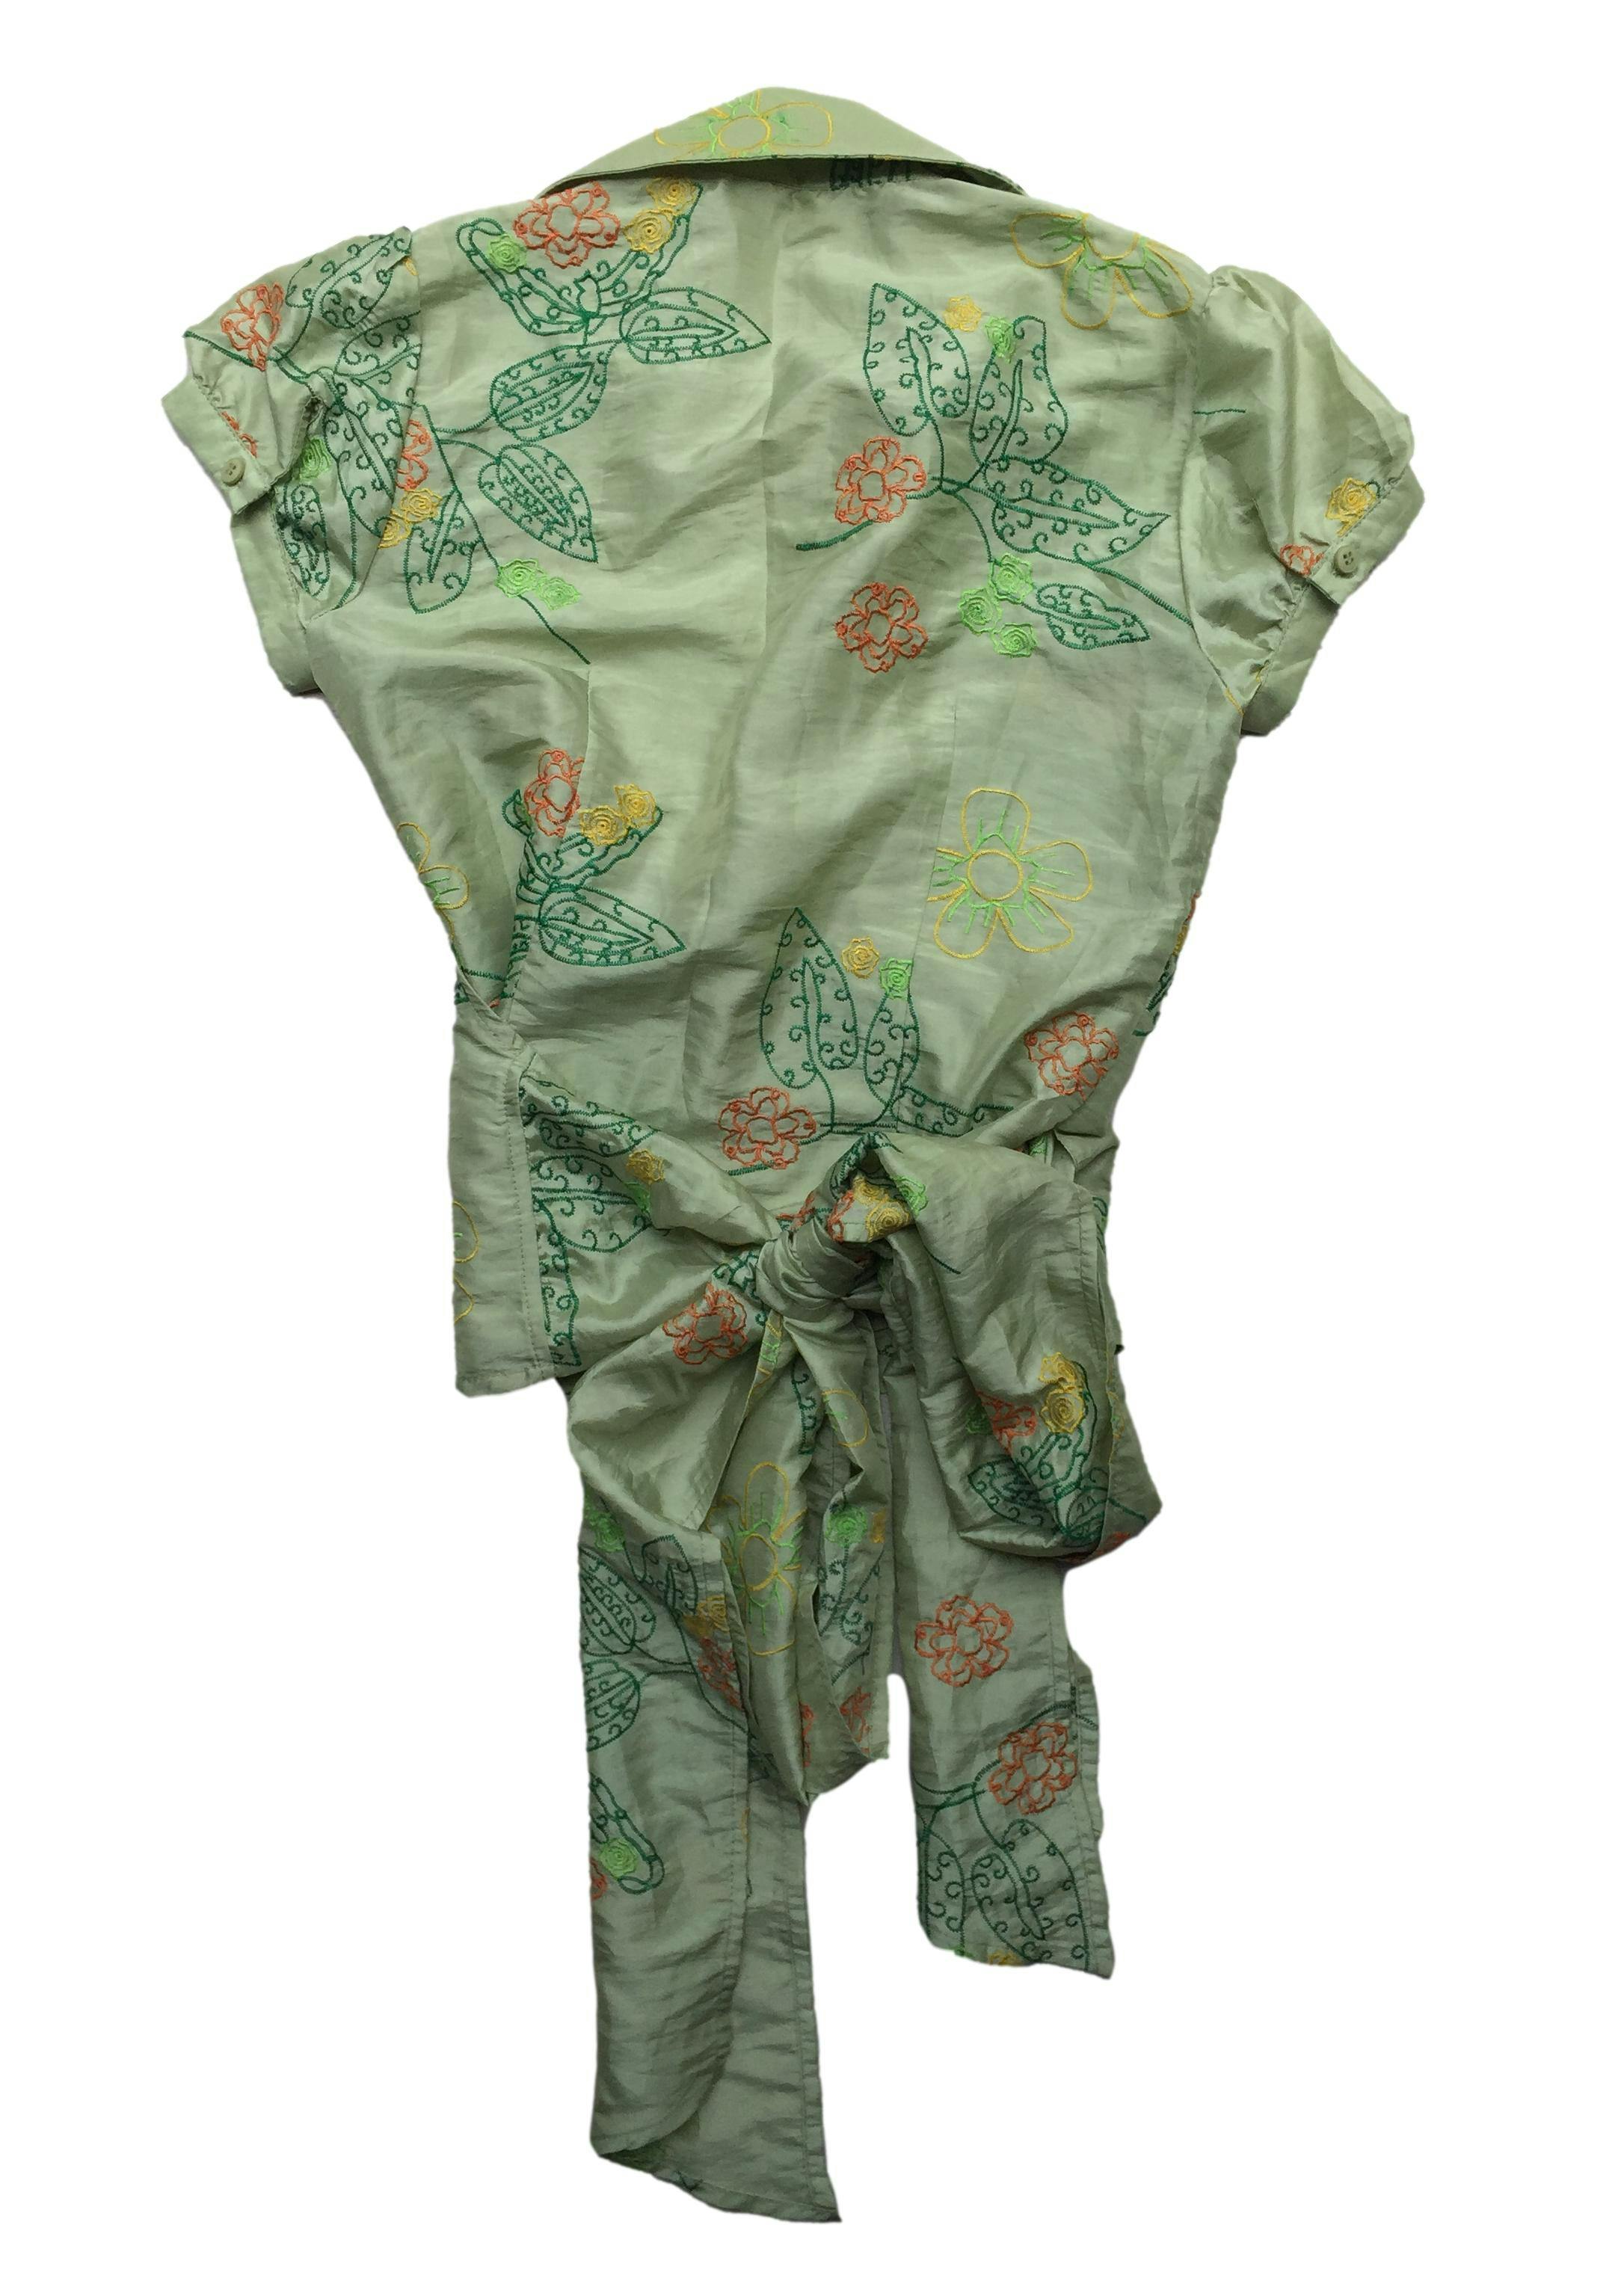 Blusa Essentiel envolvente, tela delgada color verde con bordados florales y mangas abullonadas. Busto 96cm, Largo 52cm.